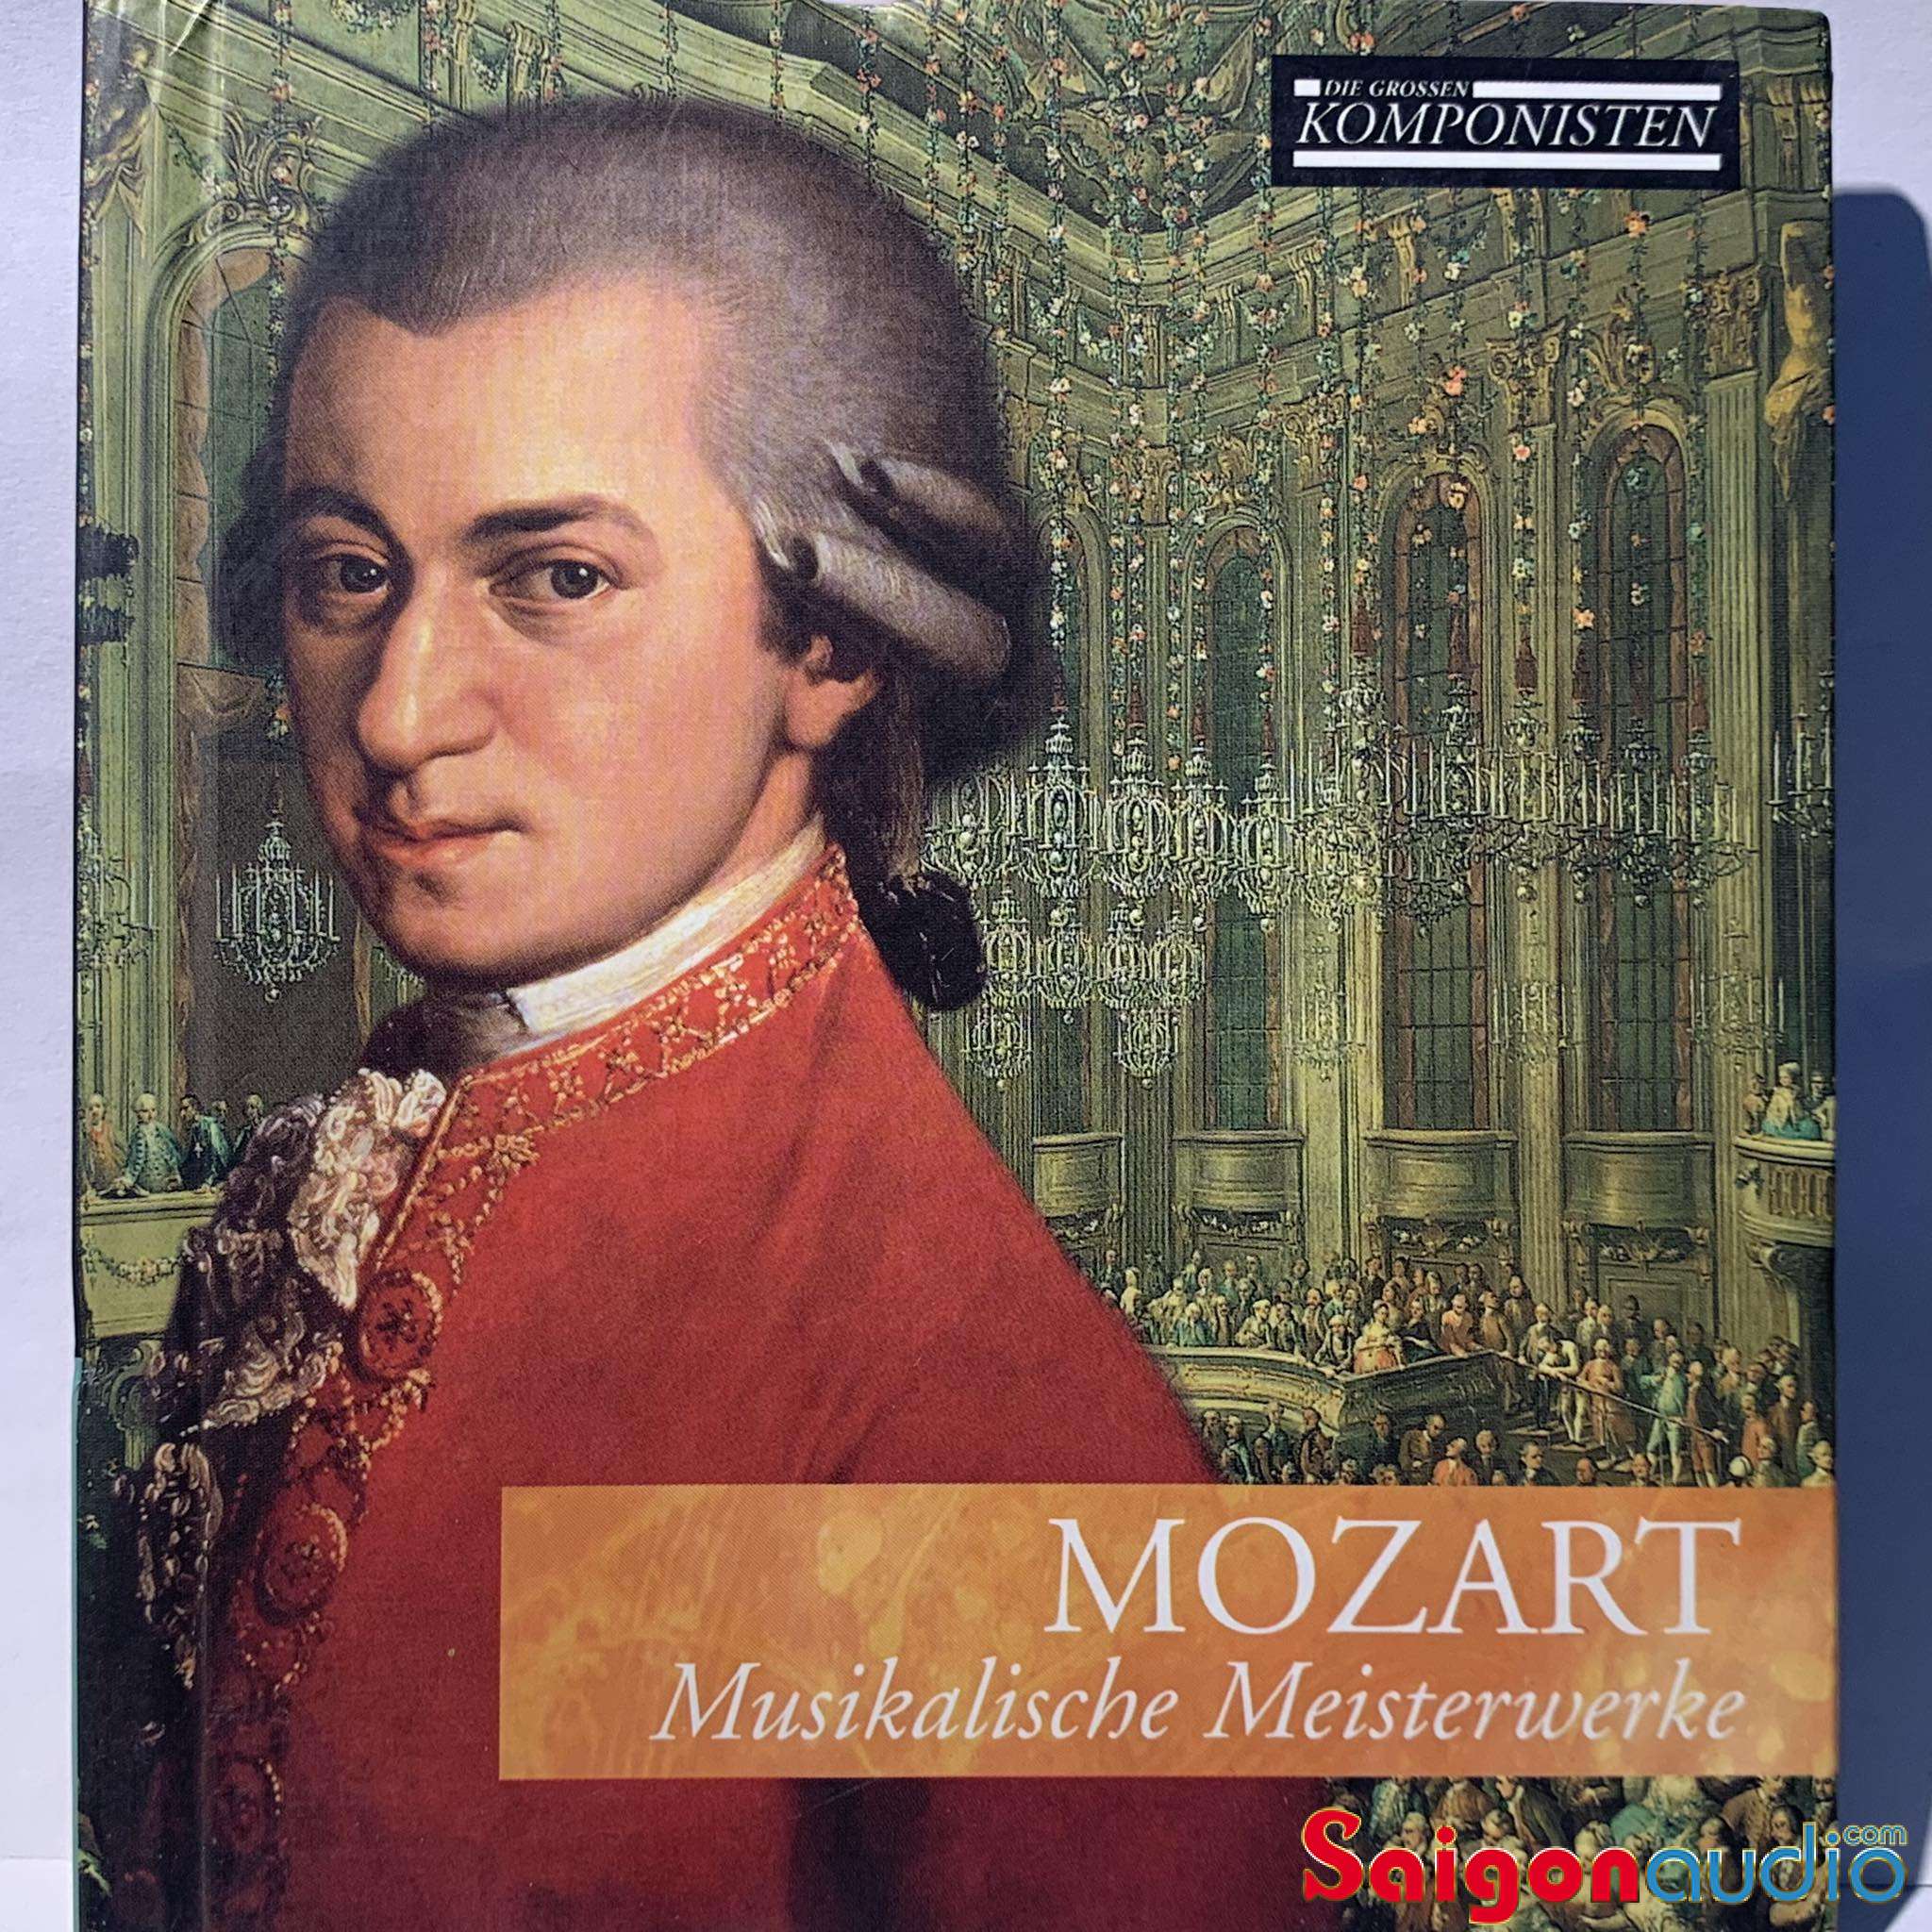 Đĩa CD gốc nhạc cổ điển Mozart – Musikalische Meisterwerke (Free ship khi mua 2 đĩa CD cùng hoặc khác loại)